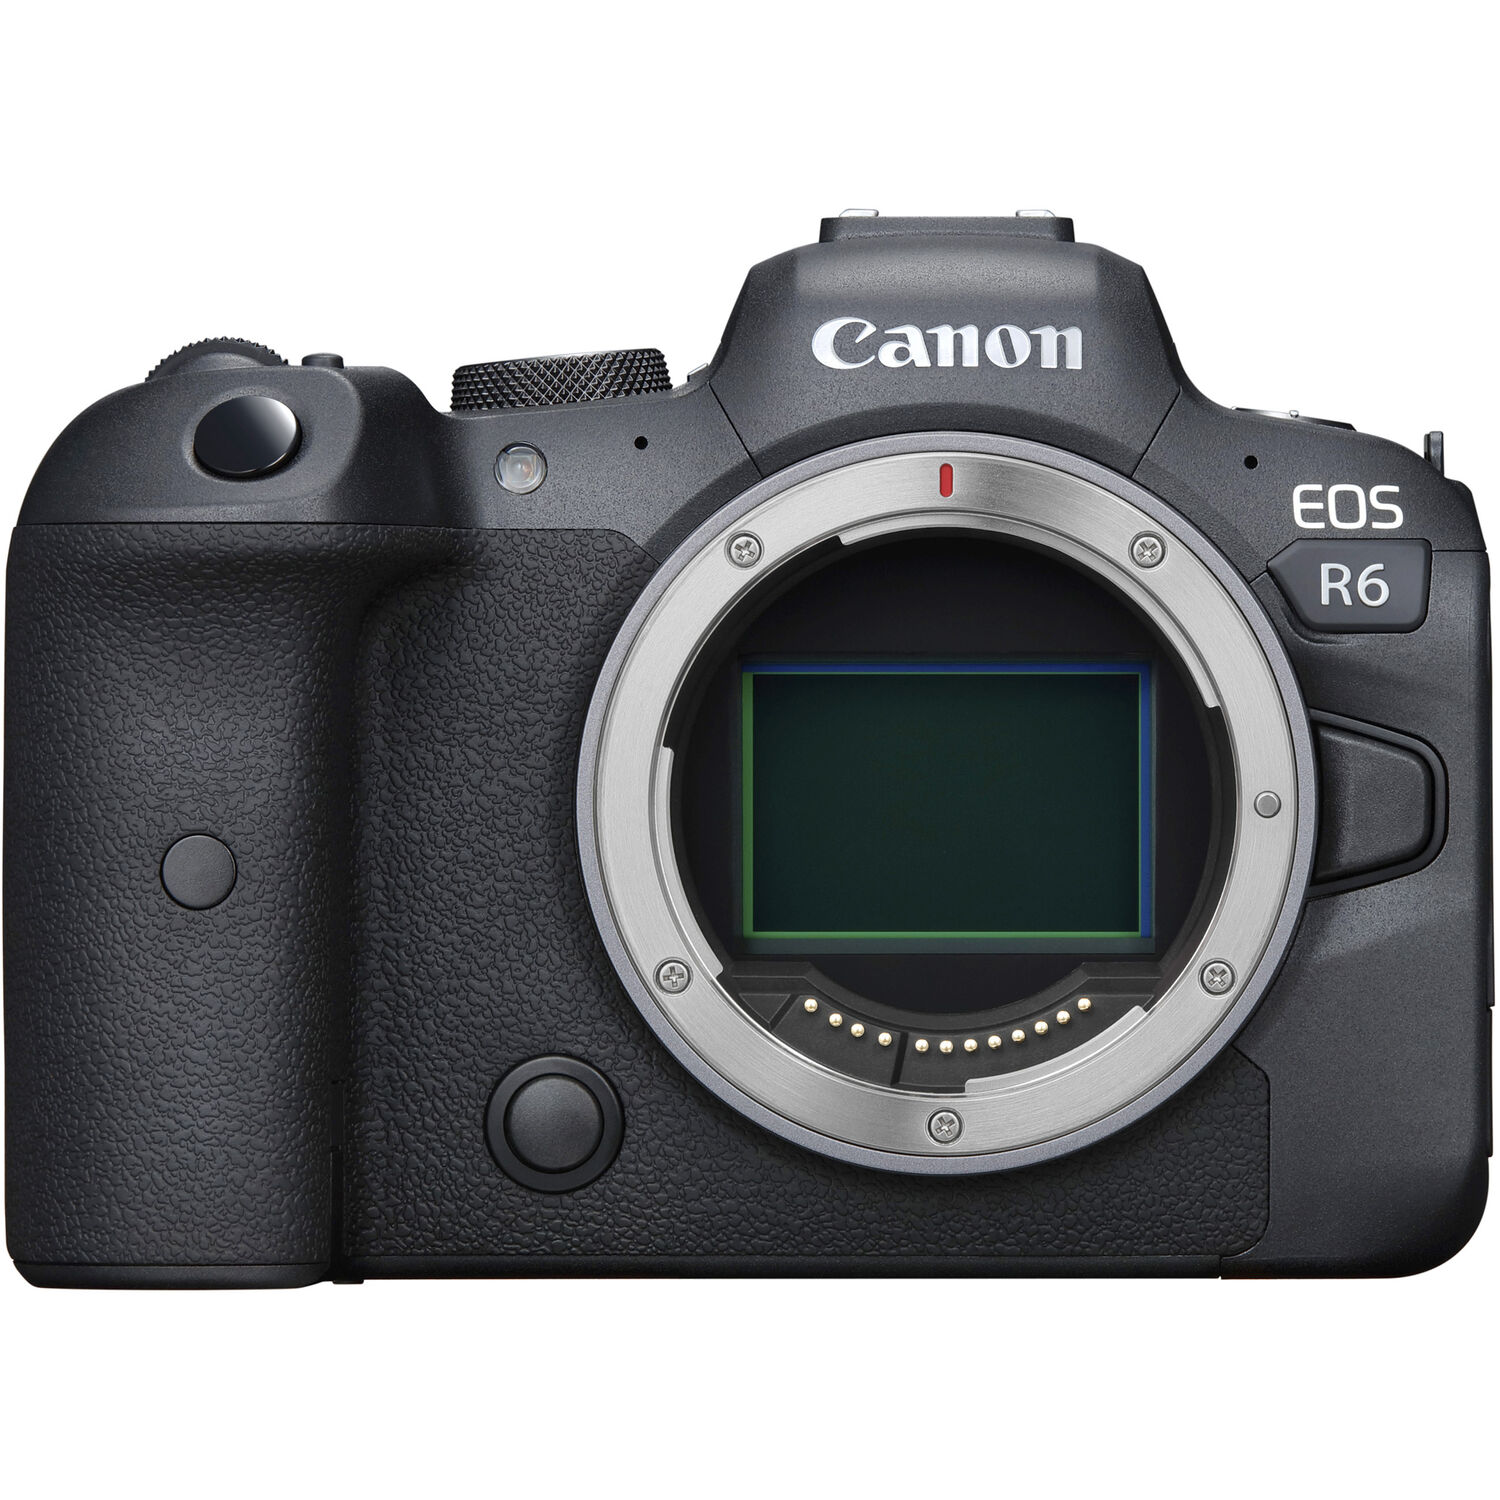 Canon EOS R6: Canon EOS R6 là chiếc máy ảnh chuyên nghiệp hoàn hảo cho những người muốn chụp ảnh thật chuyên nghiệp. Với khả năng quay video 4K và độ phân giải 20.1MP, chiếc máy ảnh này là một sự lựa chọn tuyệt vời để có thể chụp được những bức ảnh đẹp nhất trong mọi tình huống. Khám phá ngay để trải nghiệm!